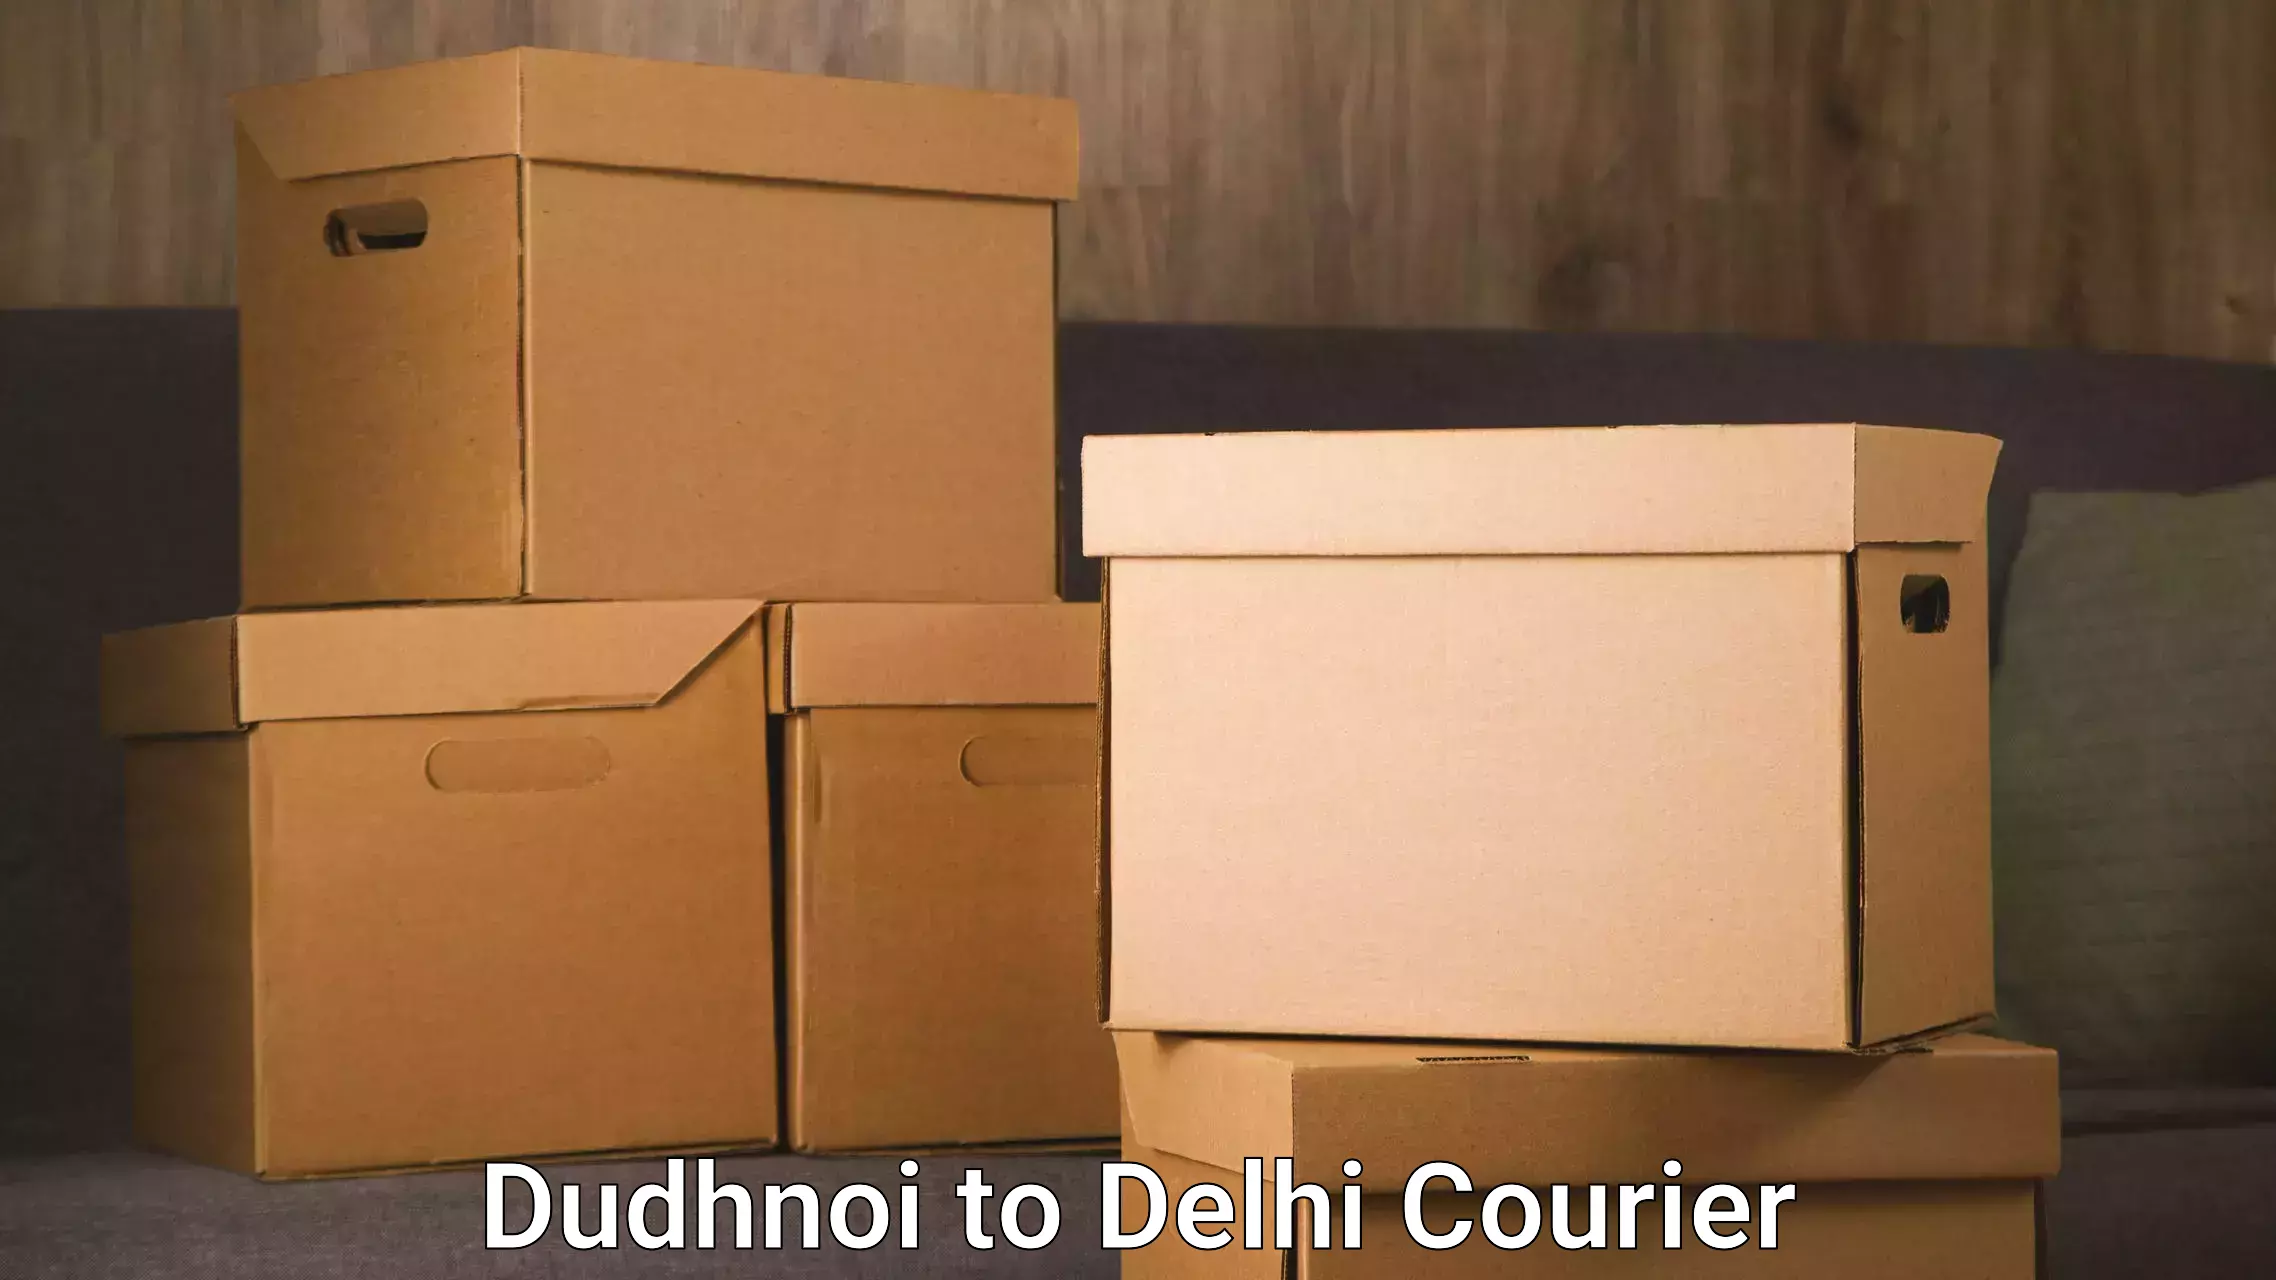 Professional courier handling Dudhnoi to Jamia Millia Islamia New Delhi